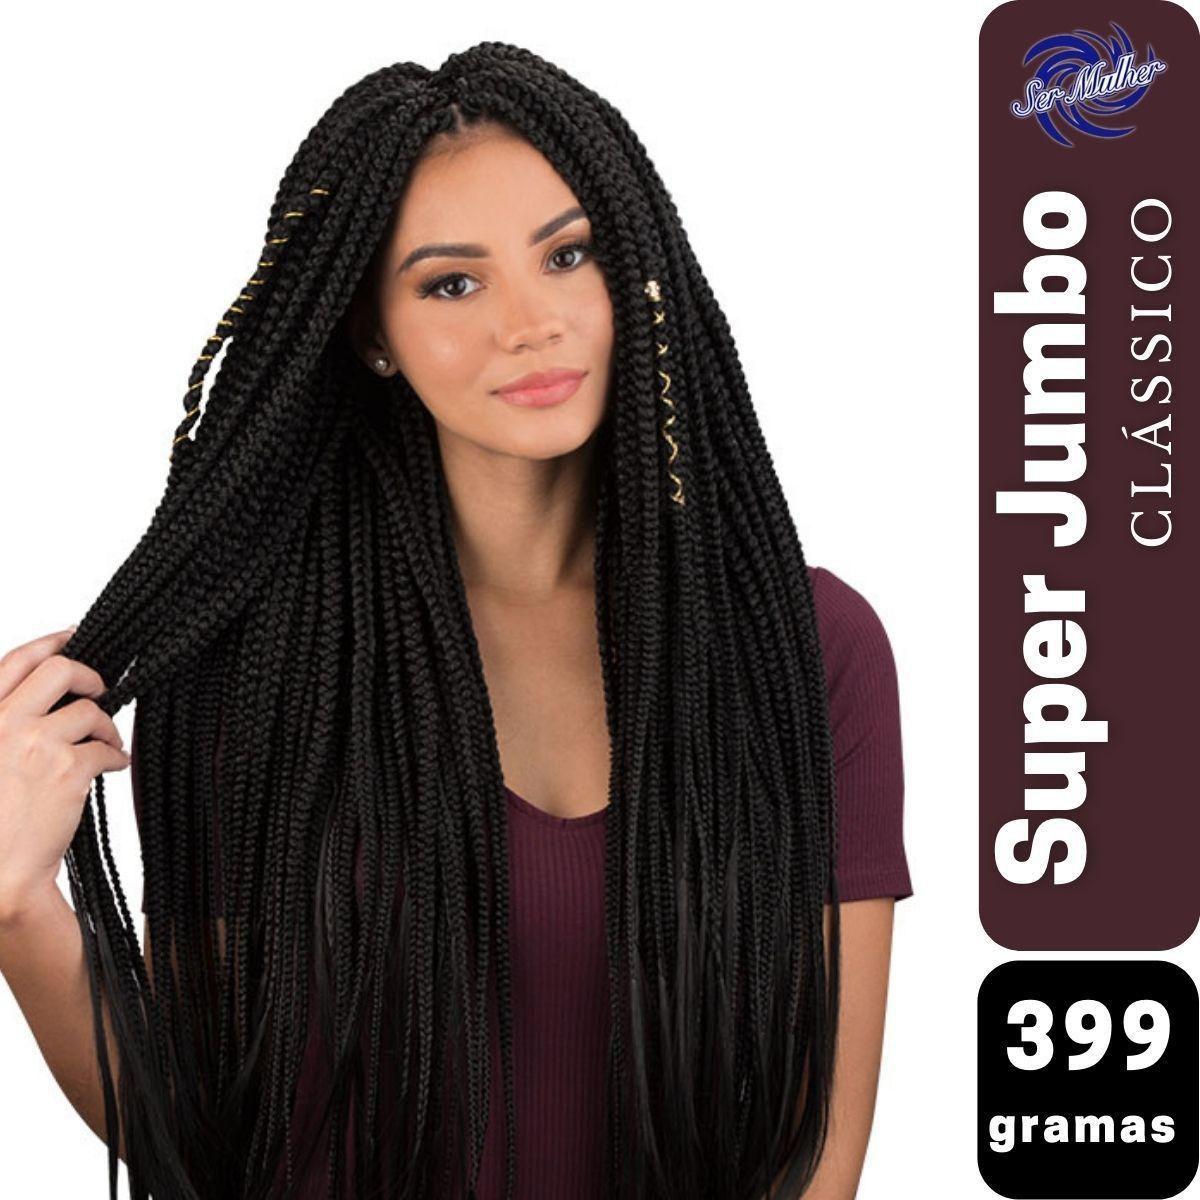 Jumbo Kanekalon Para Tranças Original Ser Mulher Pacote com 399 Gramas  Cores Clássicas 65 cm Jumbão Box Braids - Mega Hair - Magazine Luiza